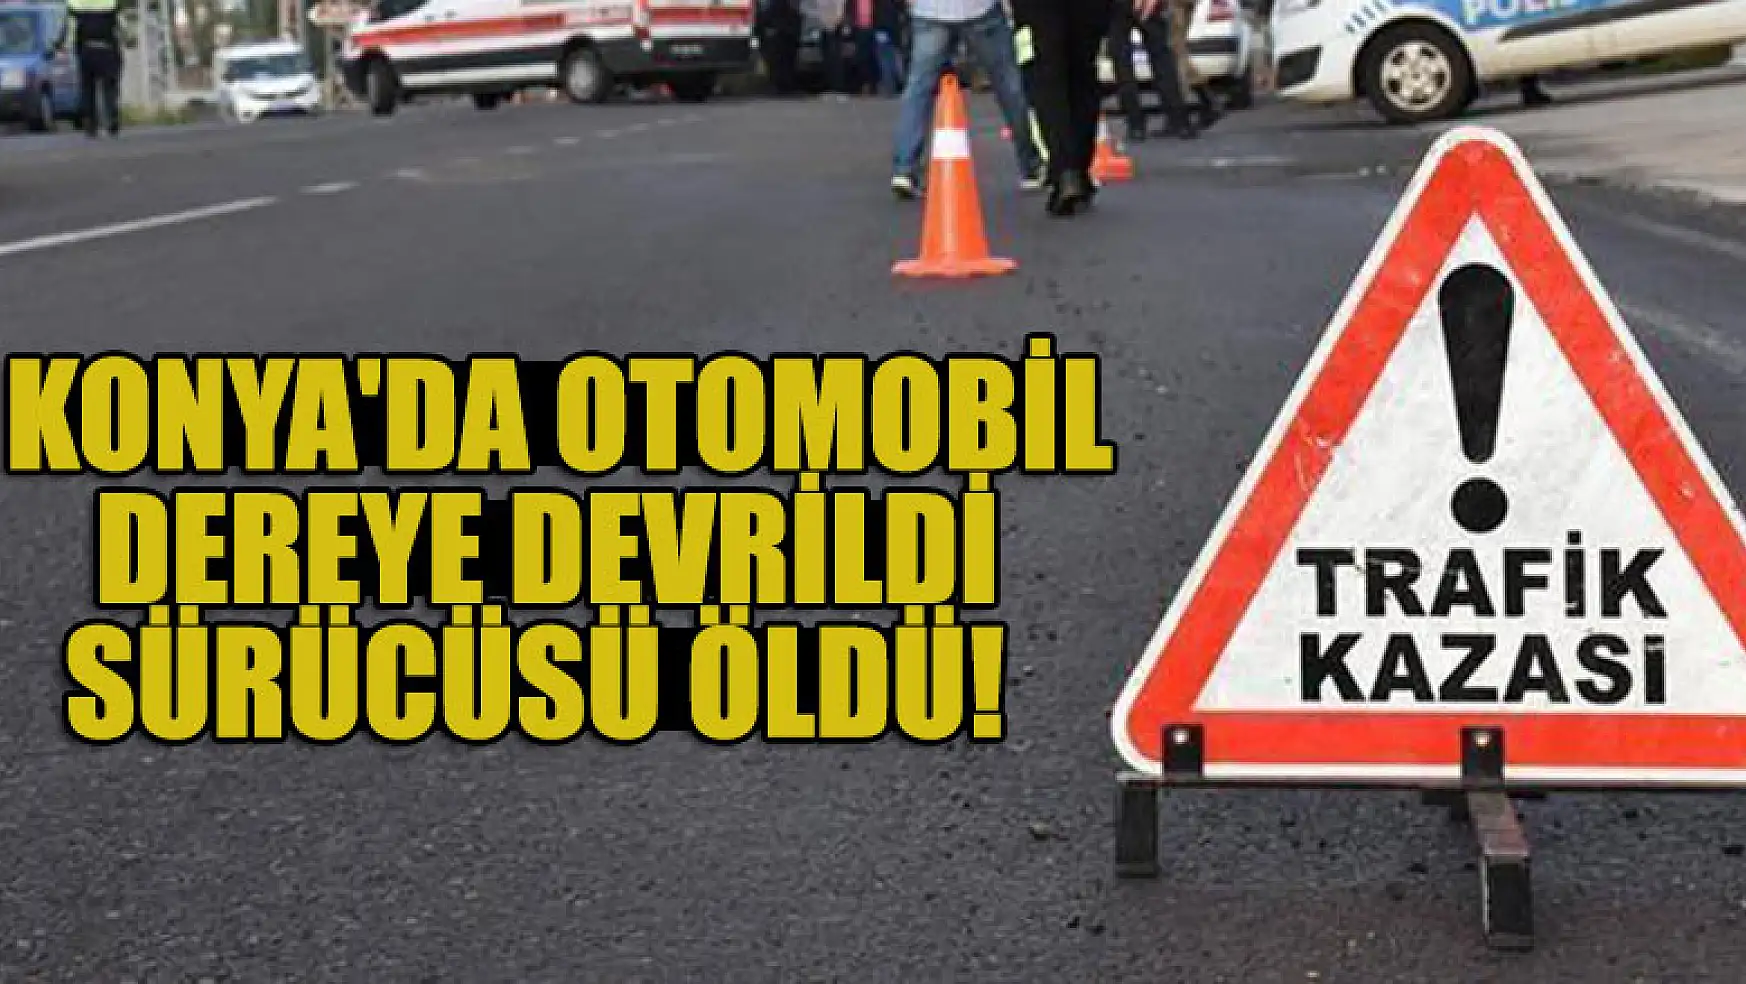 Konya'da otomobil dereye devrildi,sürücüsü öldü!